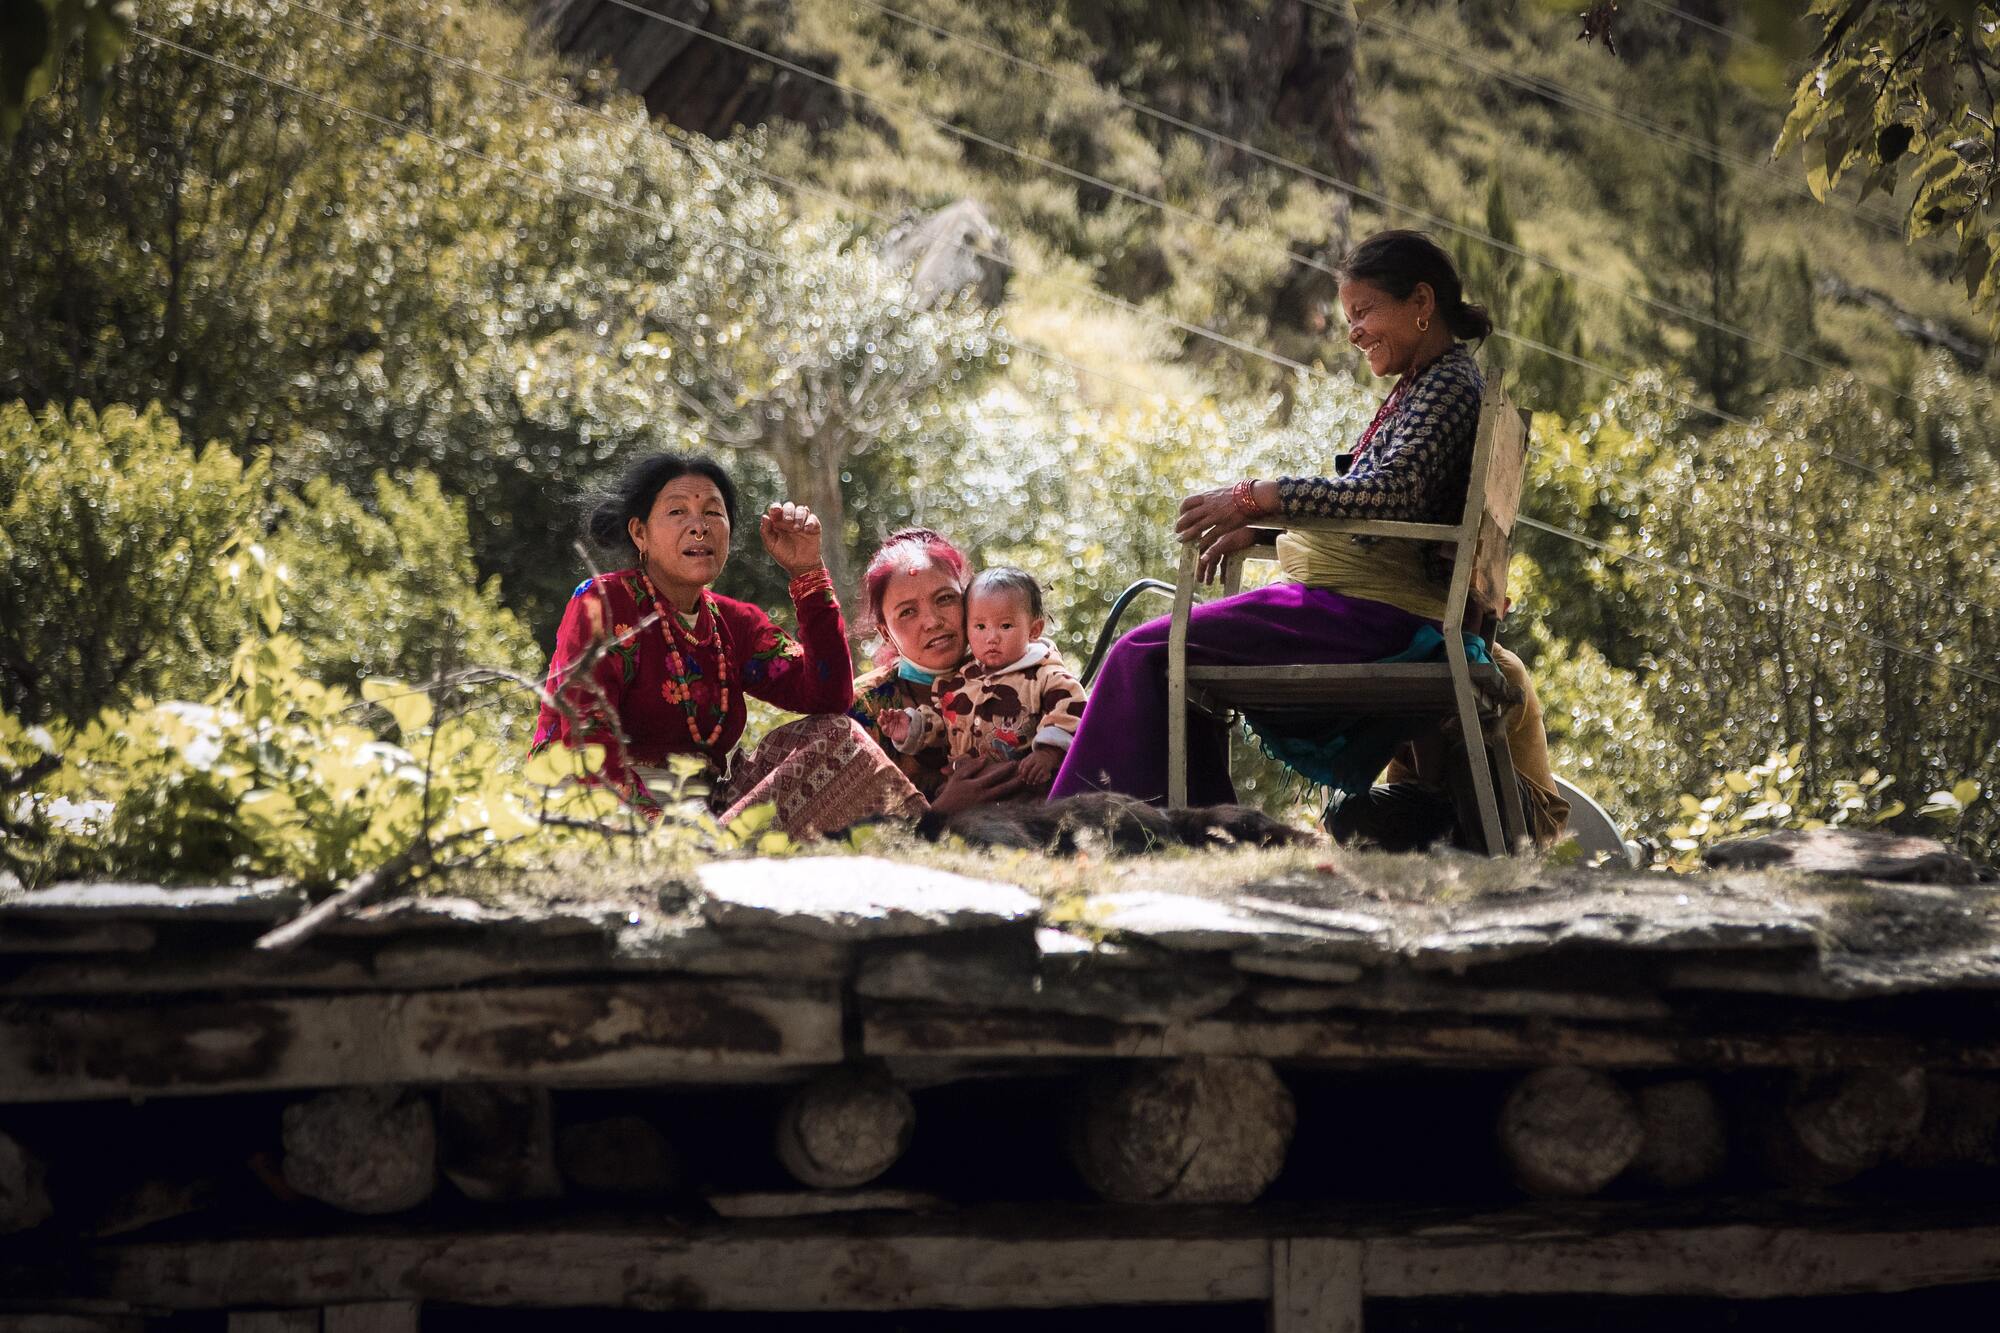 Women in Nepal - By Mountain People